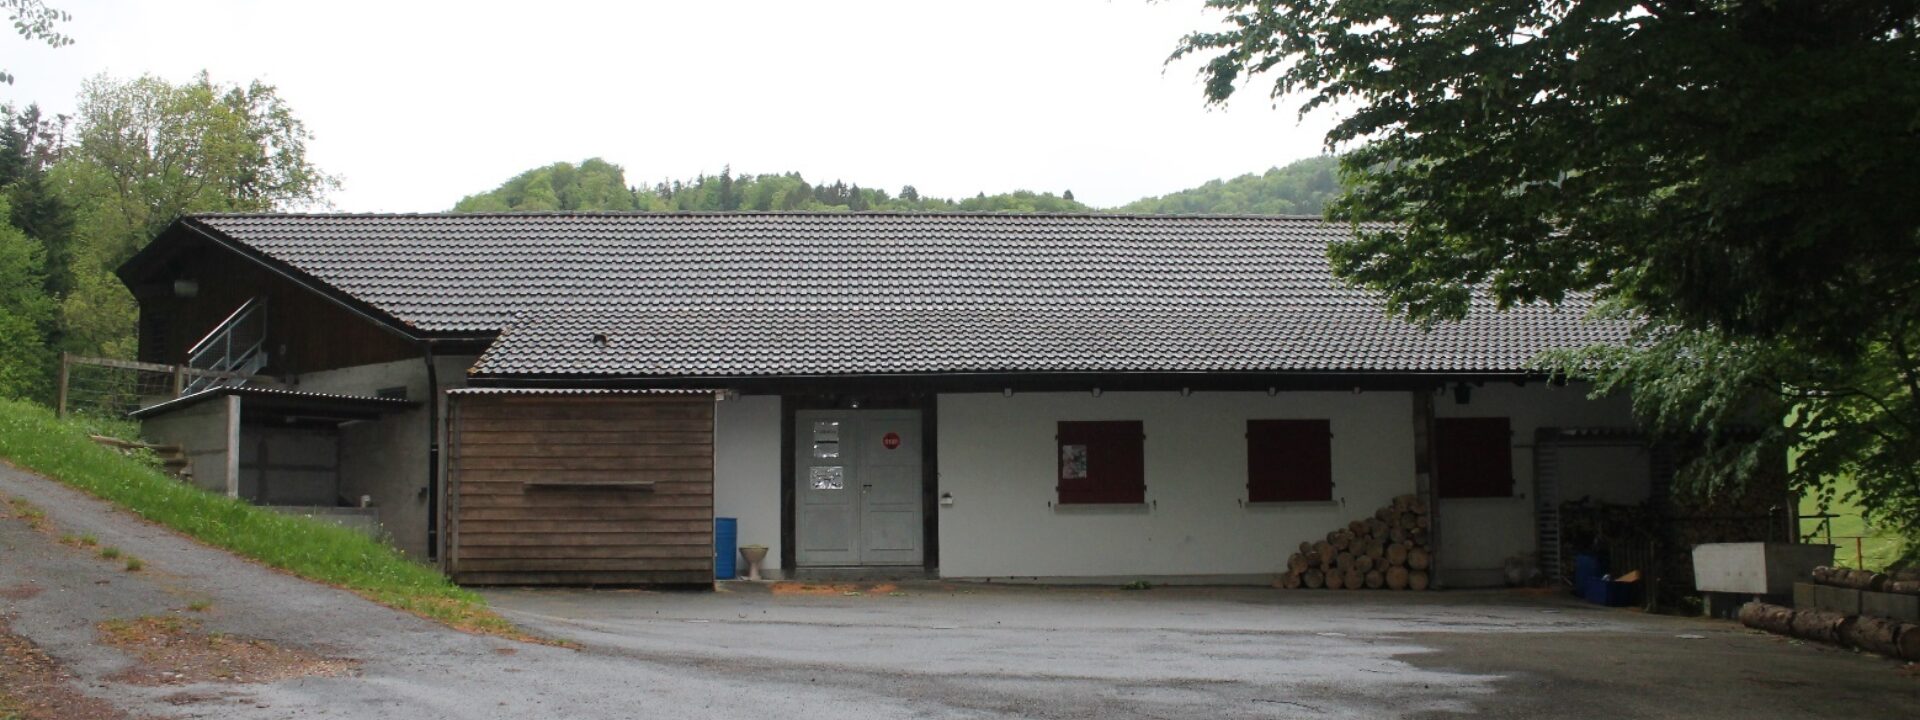 Schützenhaus Oberdorf